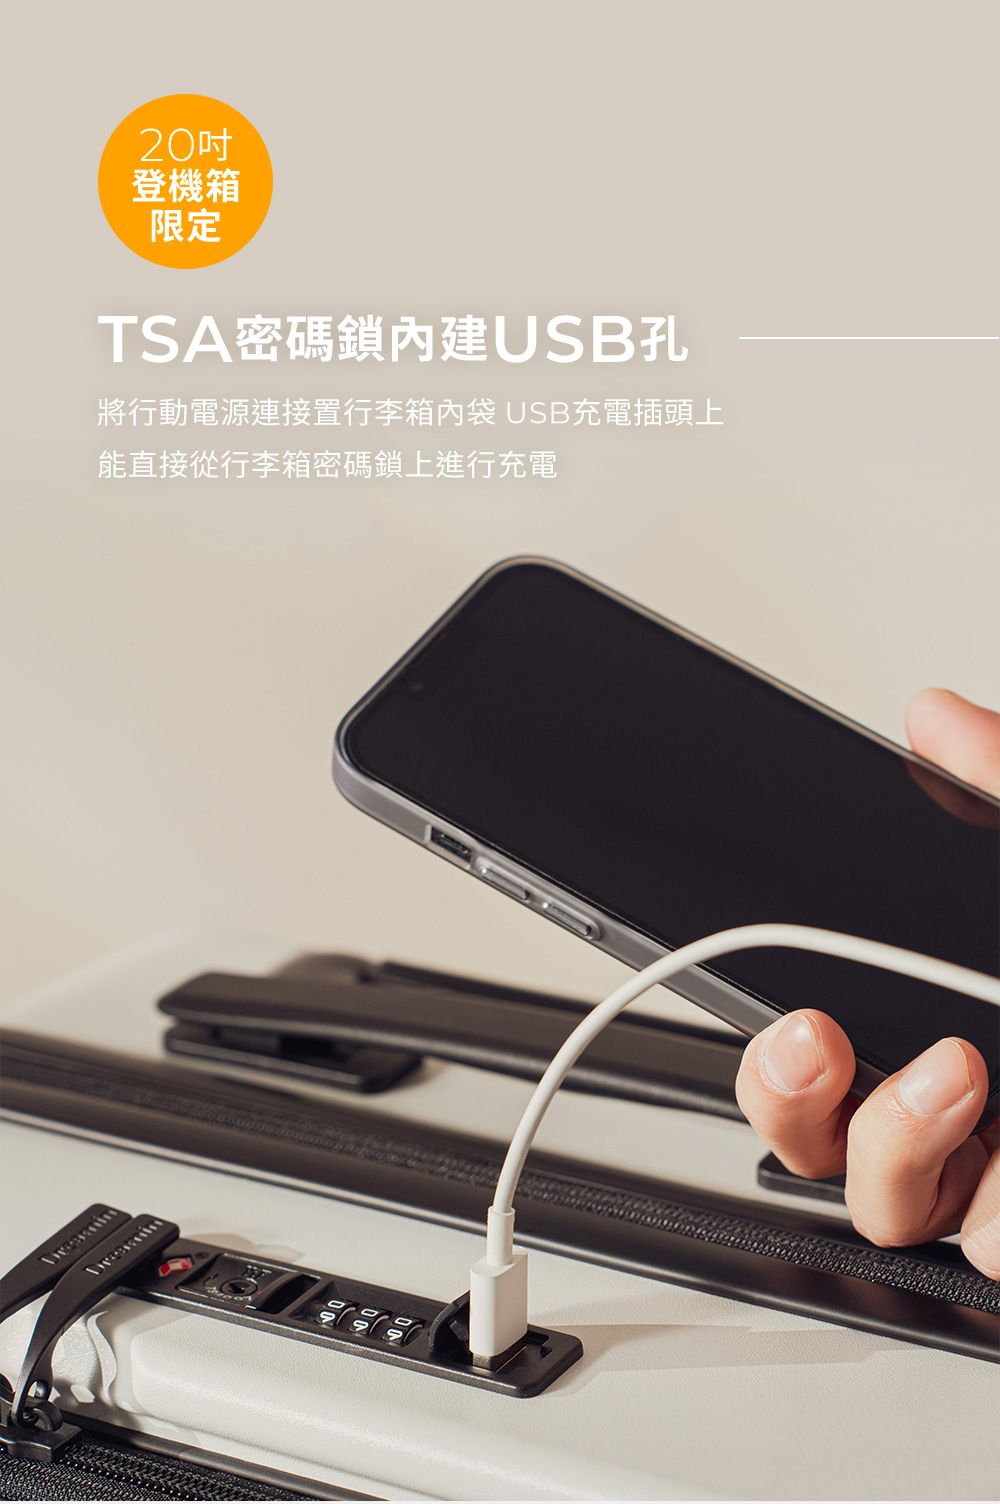 20吋登機箱限定TSA密碼鎖USB孔將行動電源連接置行李箱內袋 USB充電插頭上能直接從行李箱密碼鎖上進行充電